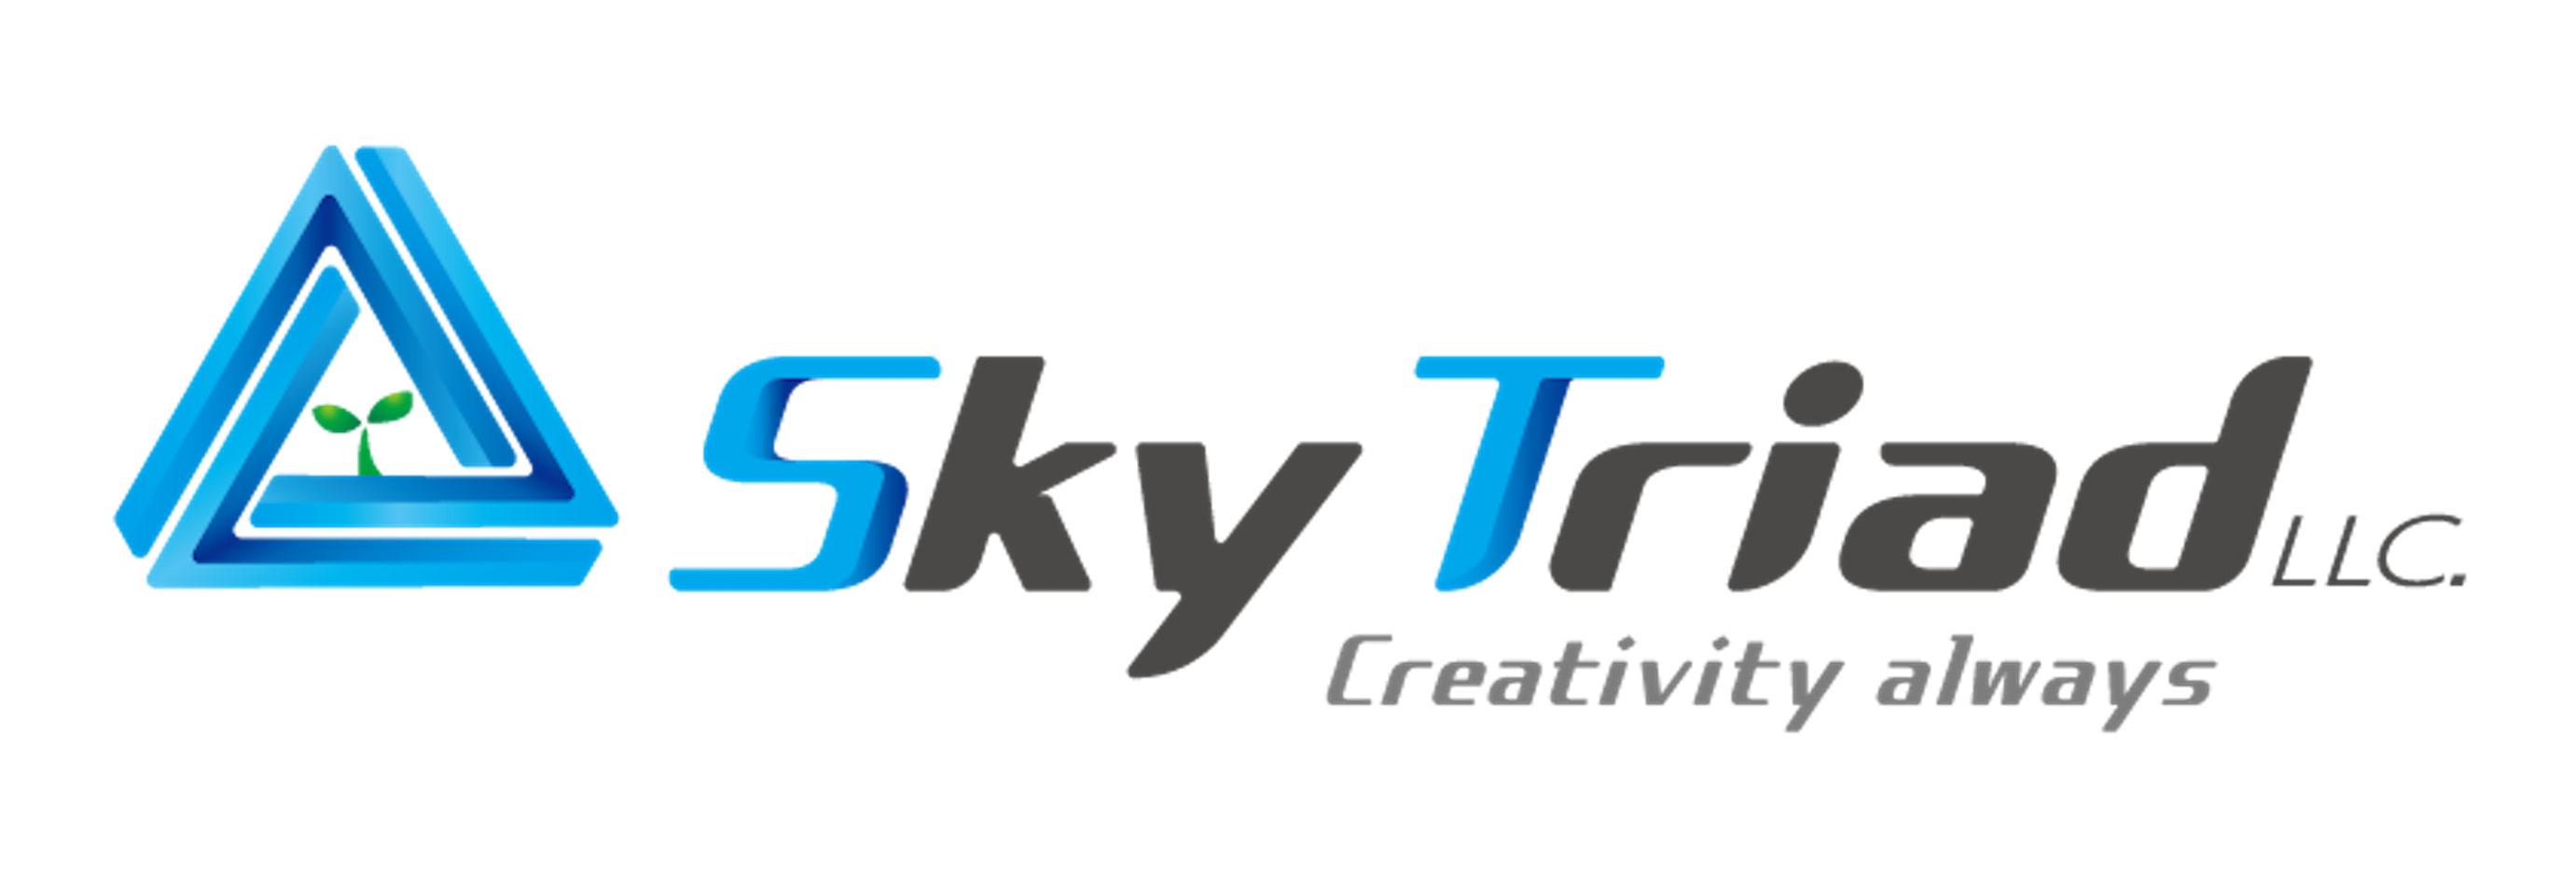 Sky Triad LLC.